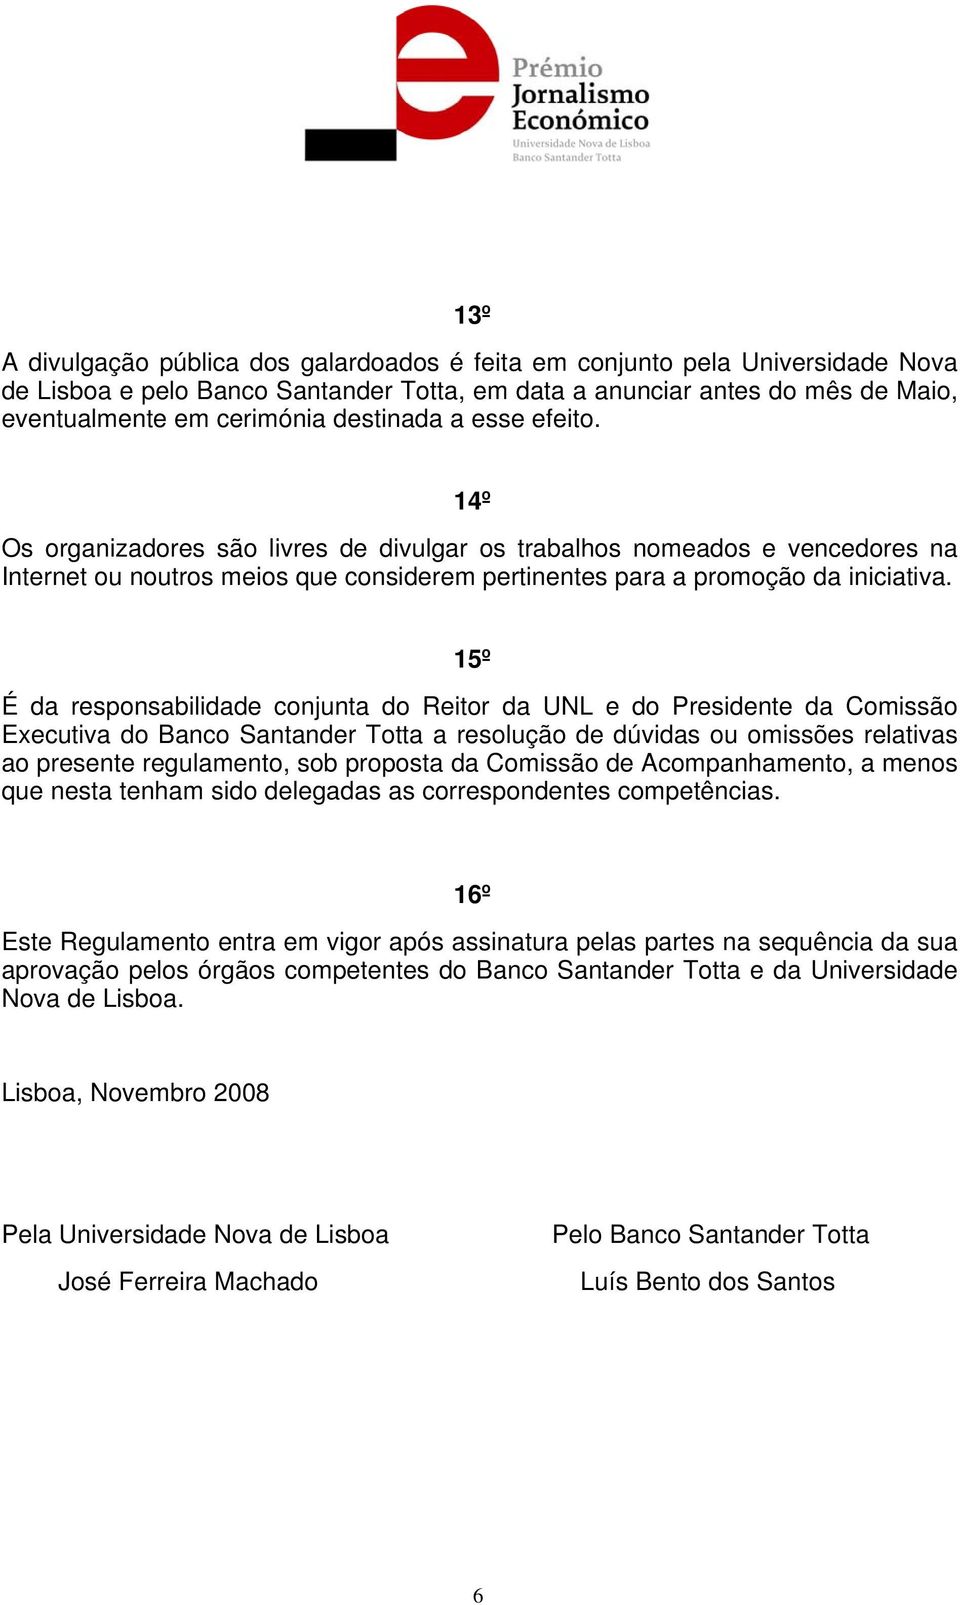 15º É da responsabilidade conjunta do Reitor da UNL e do Presidente da Comissão Executiva do Banco Santander Totta a resolução de dúvidas ou omissões relativas ao presente regulamento, sob proposta